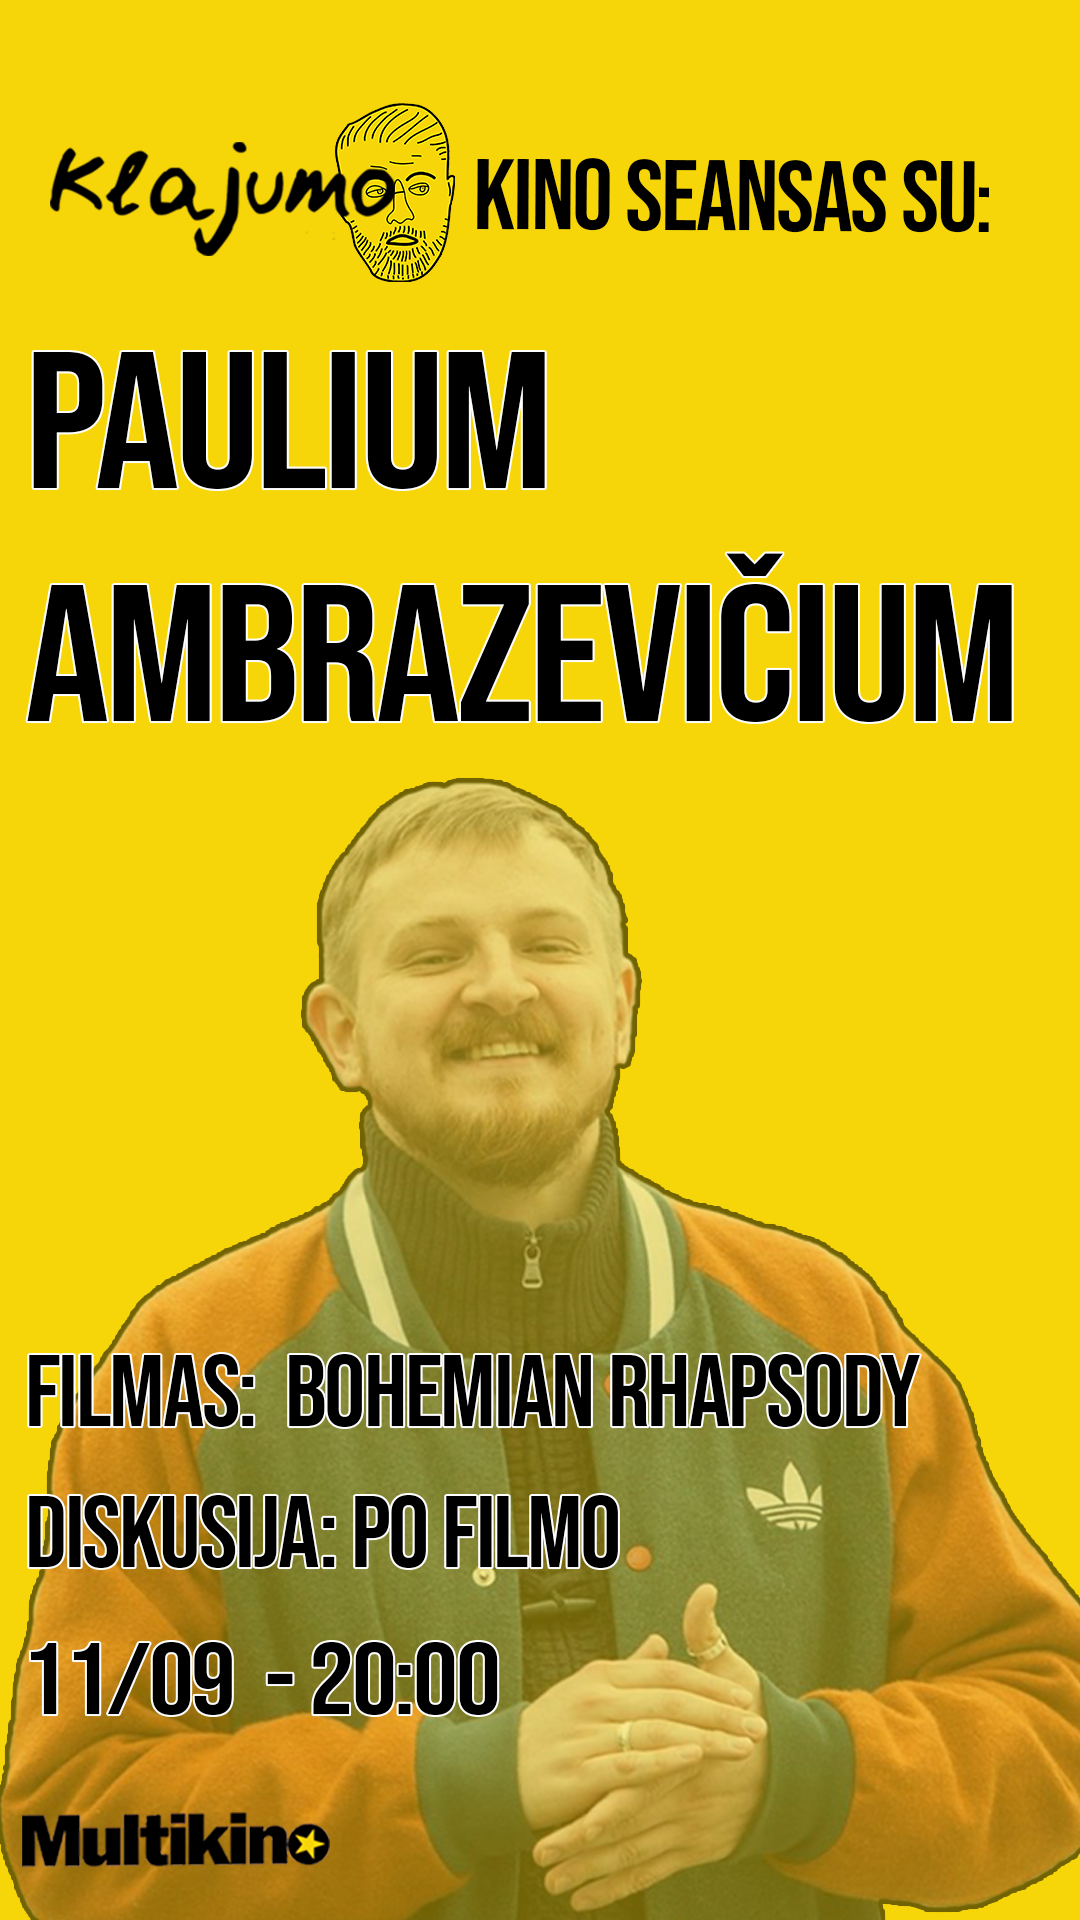 Klajumo kino seansas : Bohemiška Rapsodija (Bohemian Rhapsody)